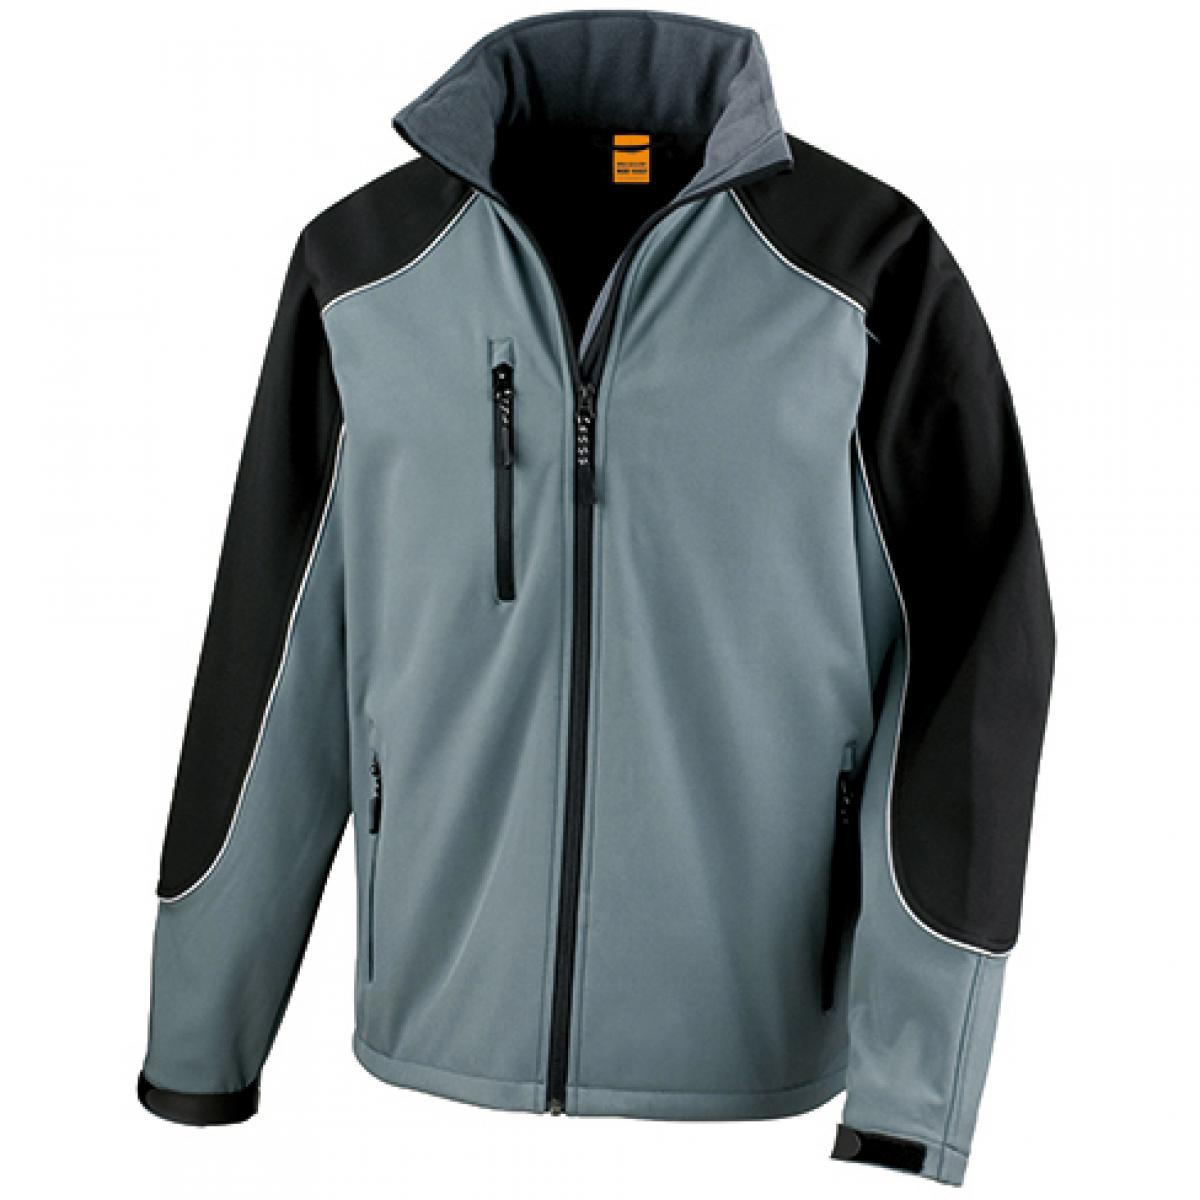 Hersteller: Result WORK-GUARD Herstellernummer: R118X Artikelbezeichnung: Ice Fell Hooded Soft Shell Jacke Farbe: Grey/Black